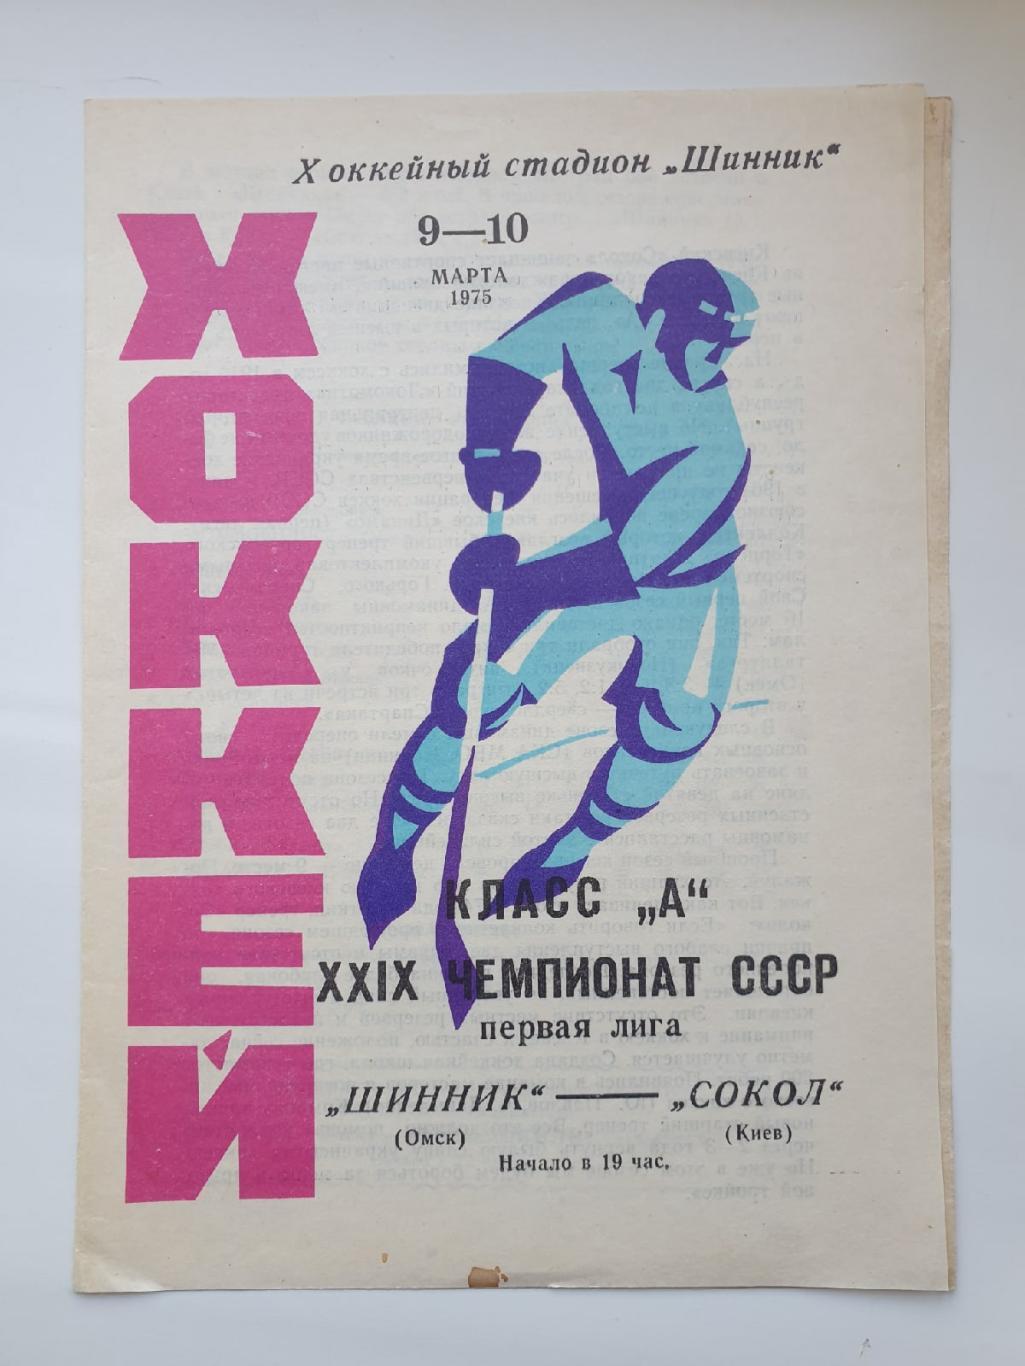 Шинник Омск - Сокол Киев. 9/10 марта 1975